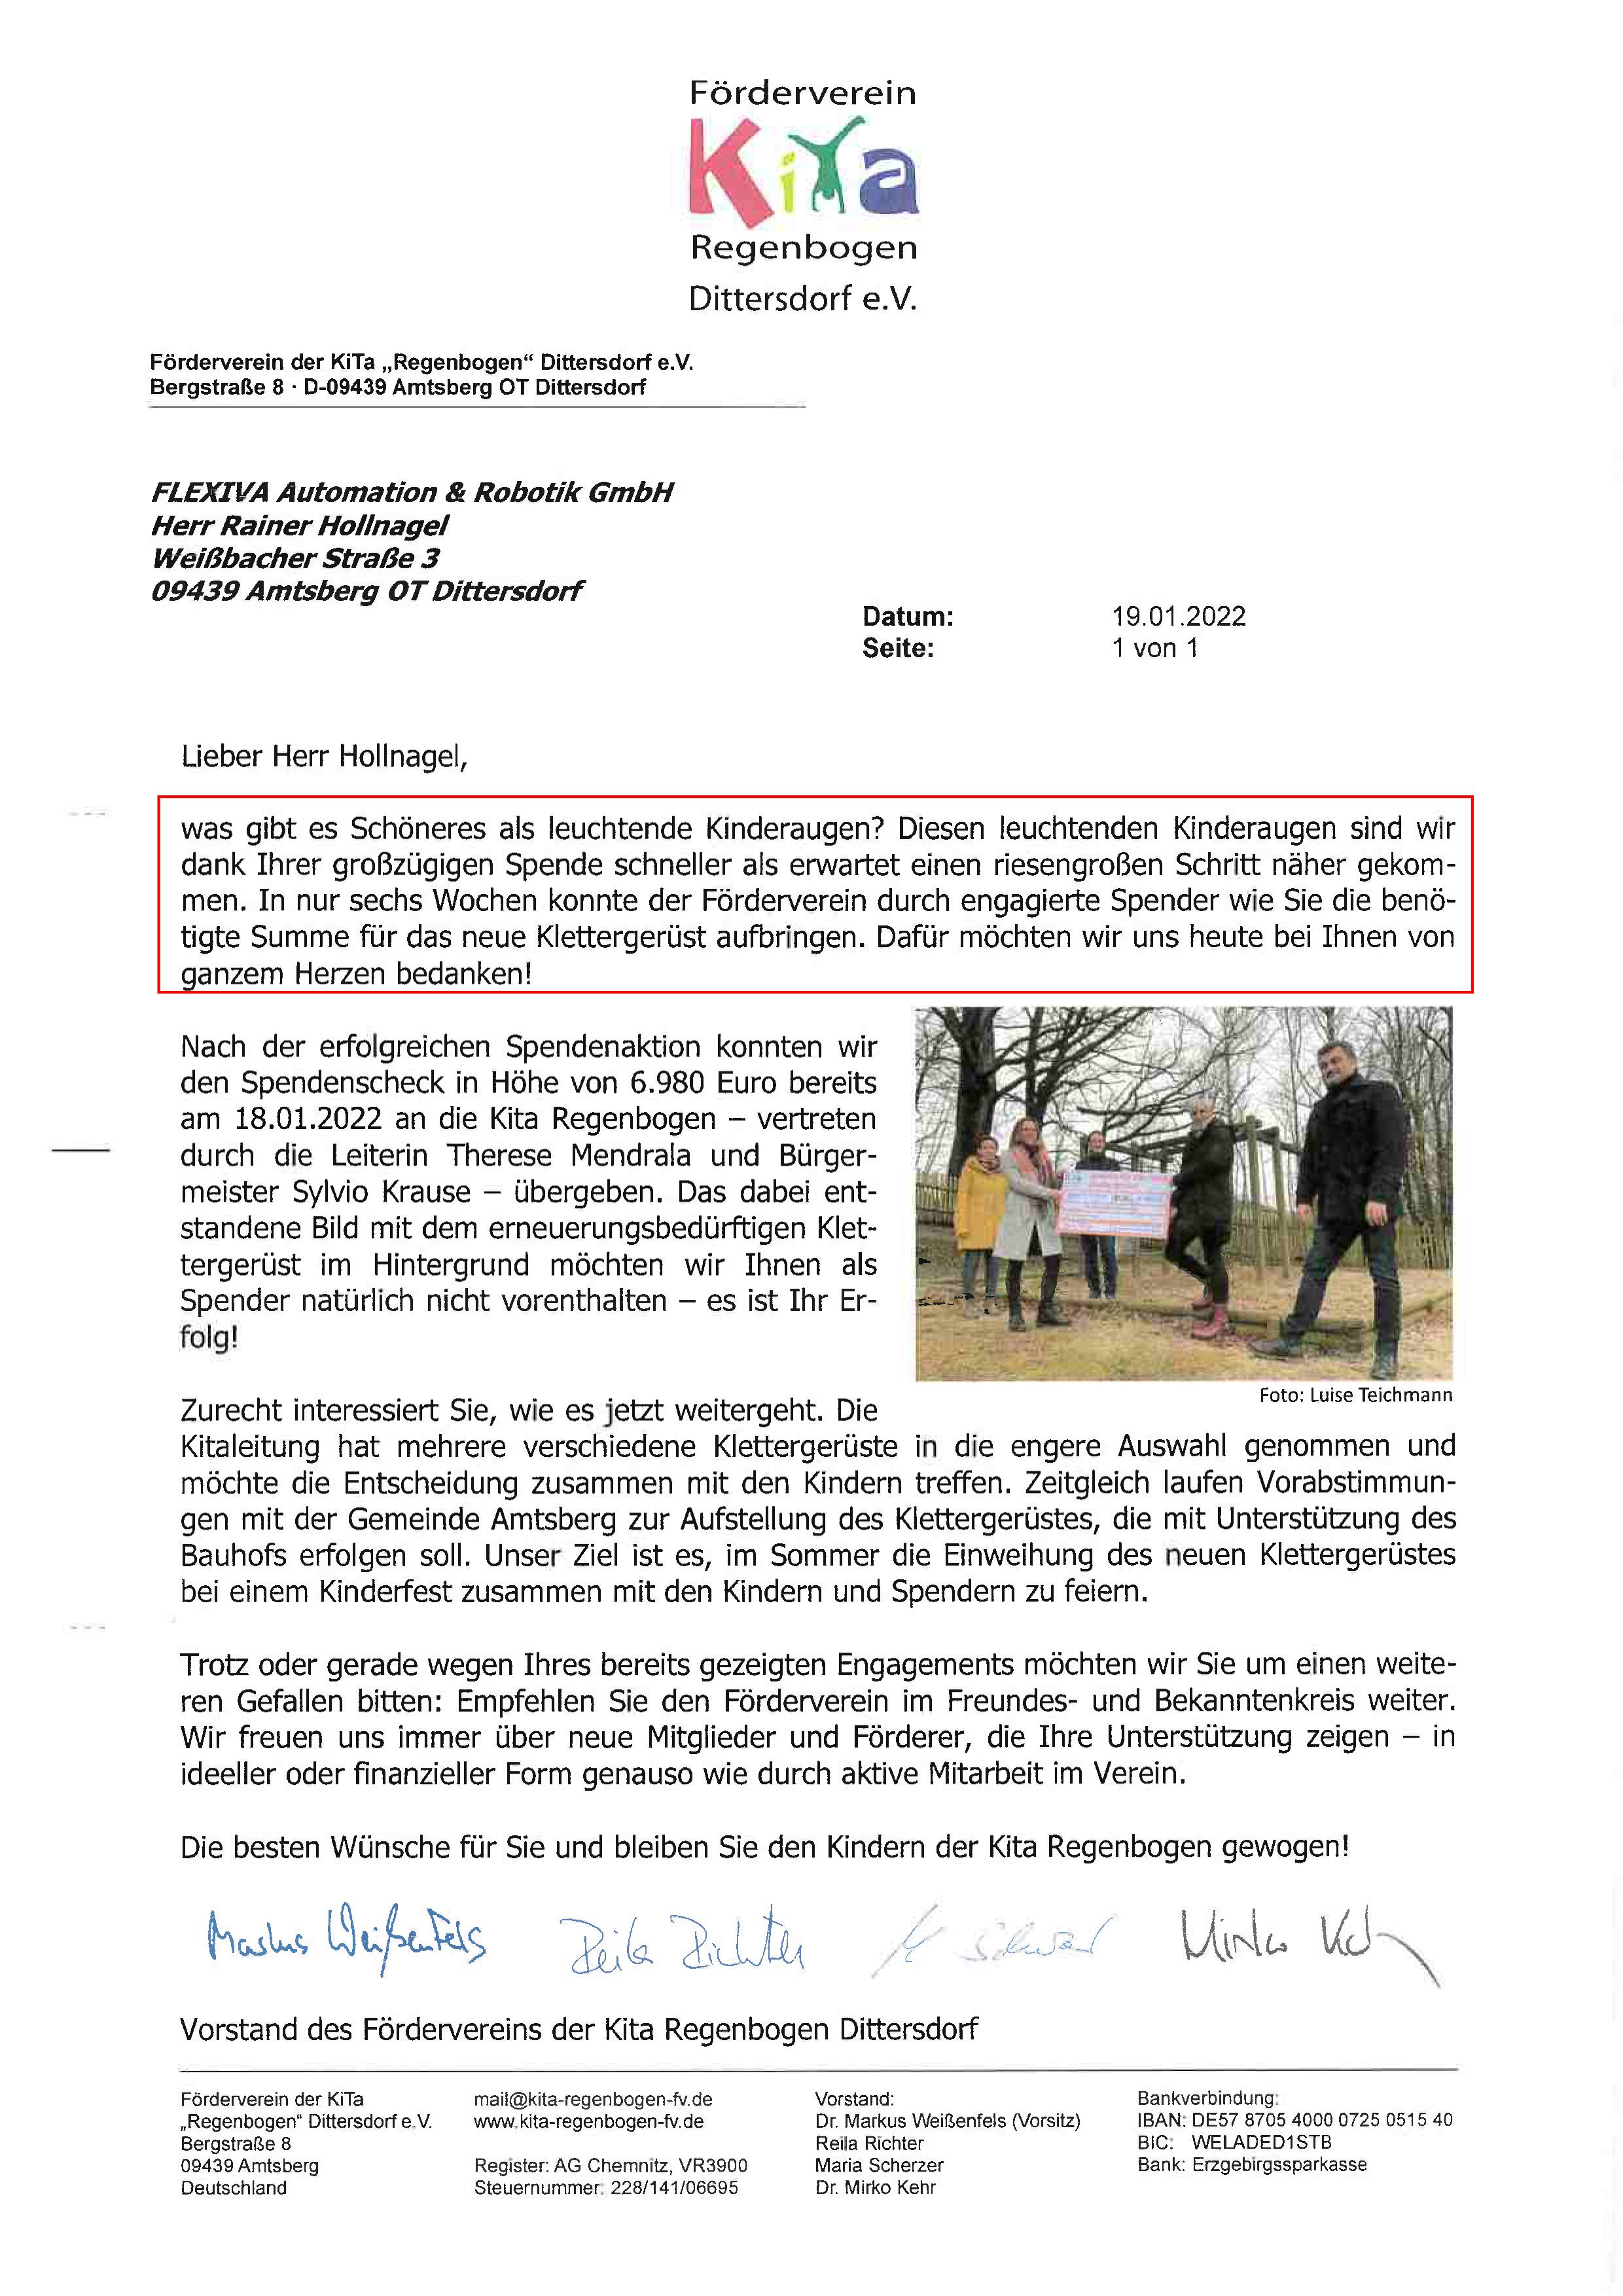 Dankes-Brief der KiTa "Regenbogen" Dittersdorf e.V. an Flexiva CEO Rainer Hollnagel für die Spende zum Bau eines neuen Klettergerüsts